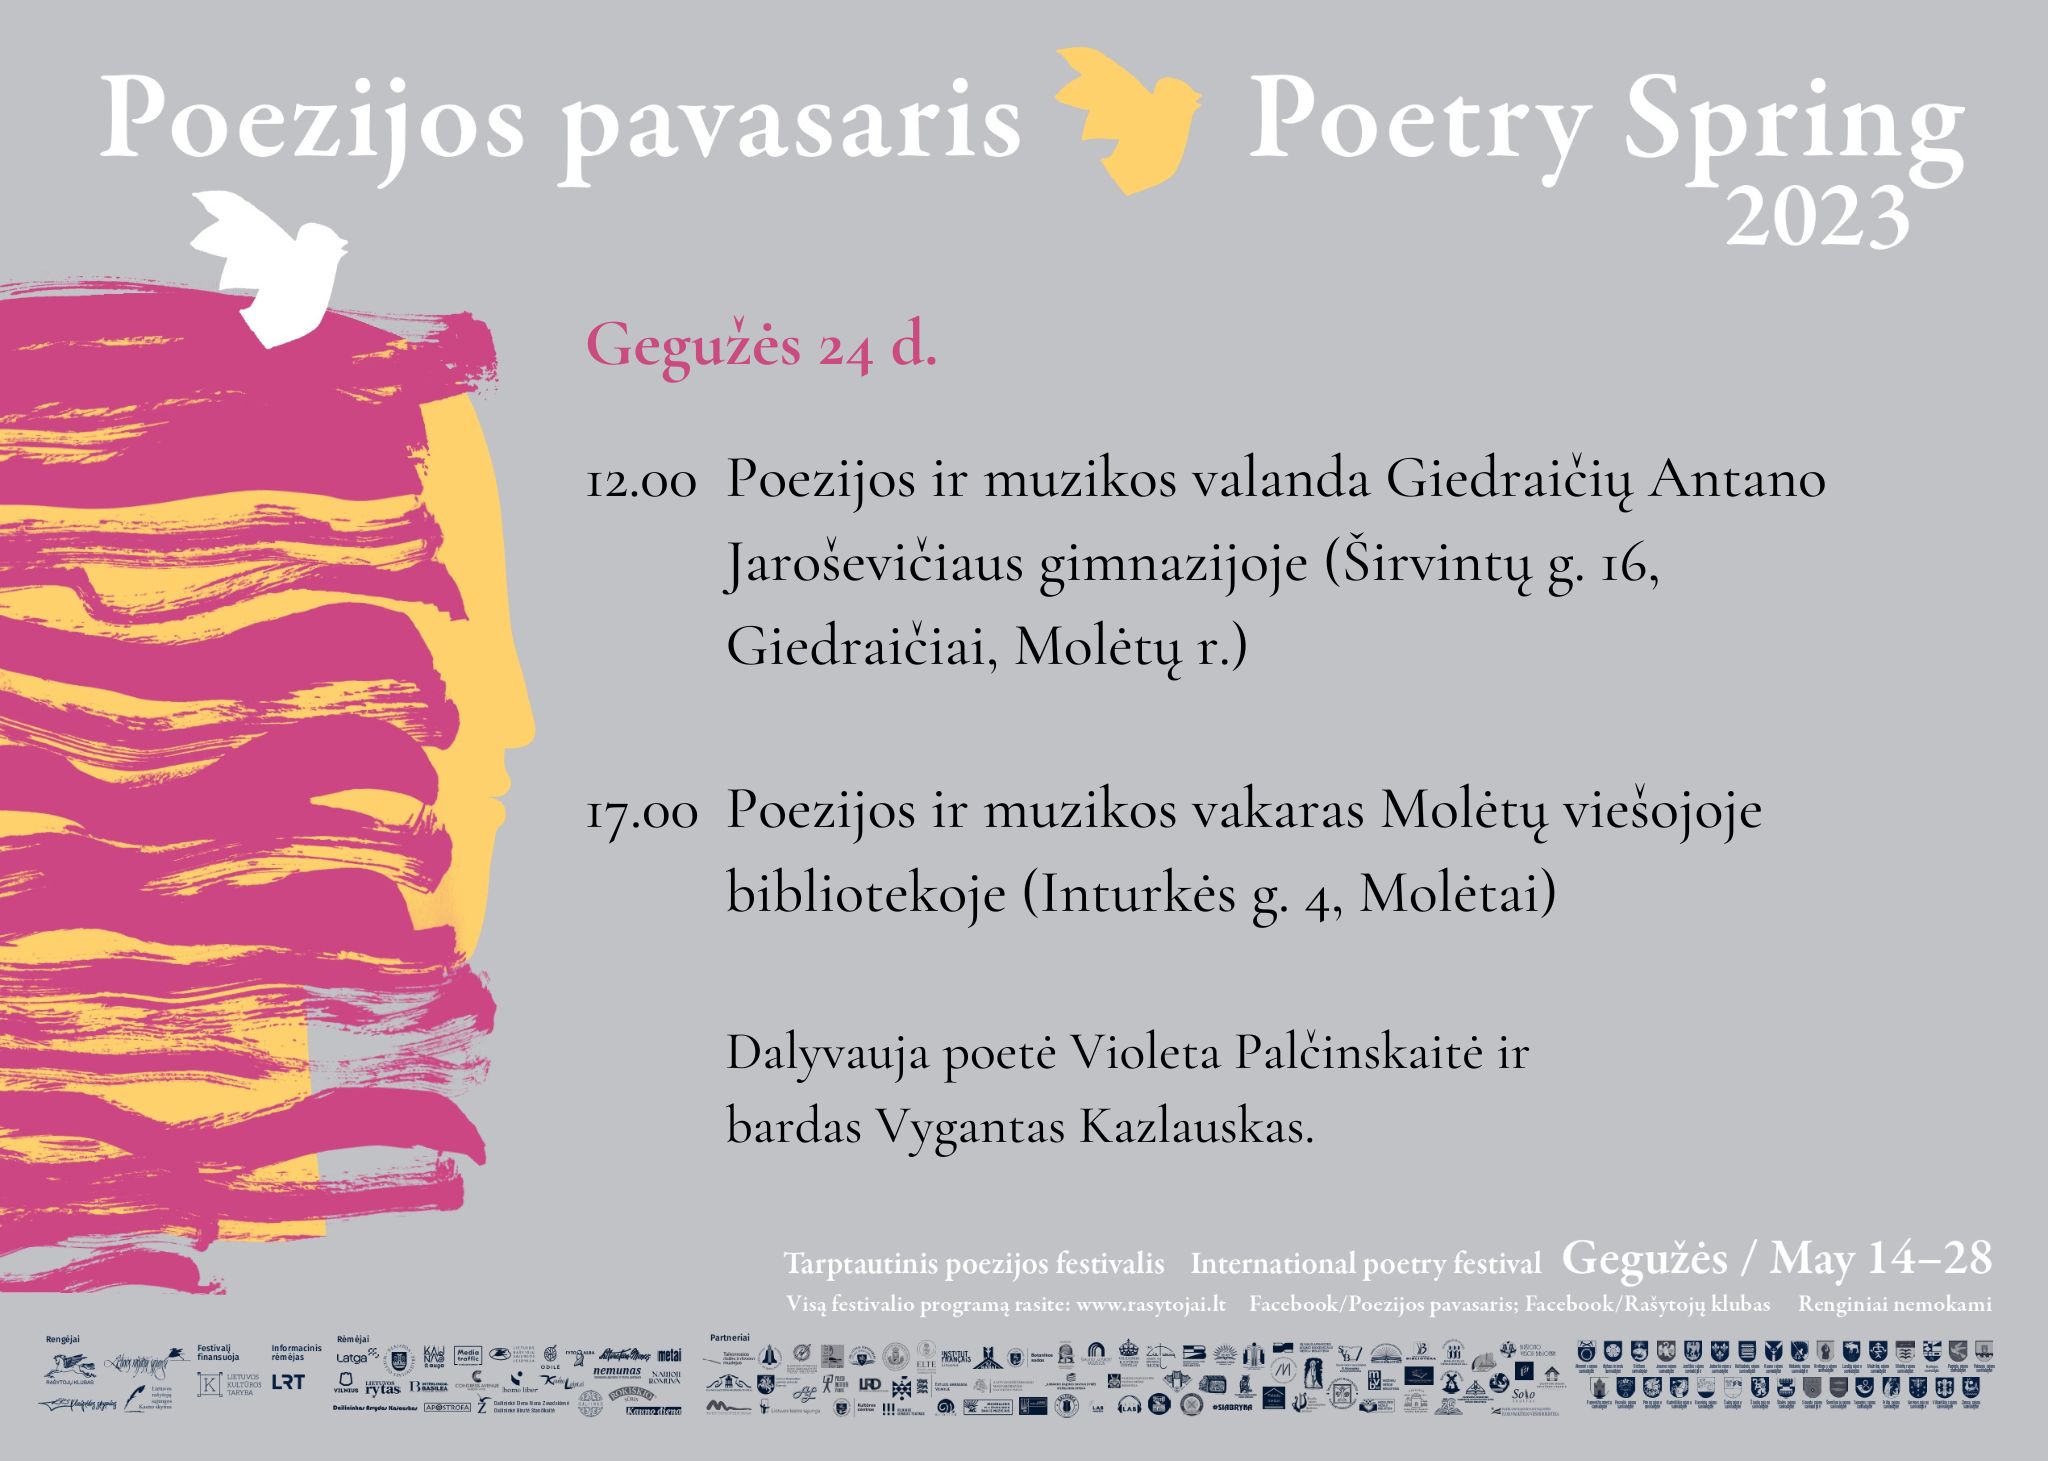 Poezijos pavasaris 2023. Dalyvauja poetė Violeta Palčinskaitė ir bardas Vygantas